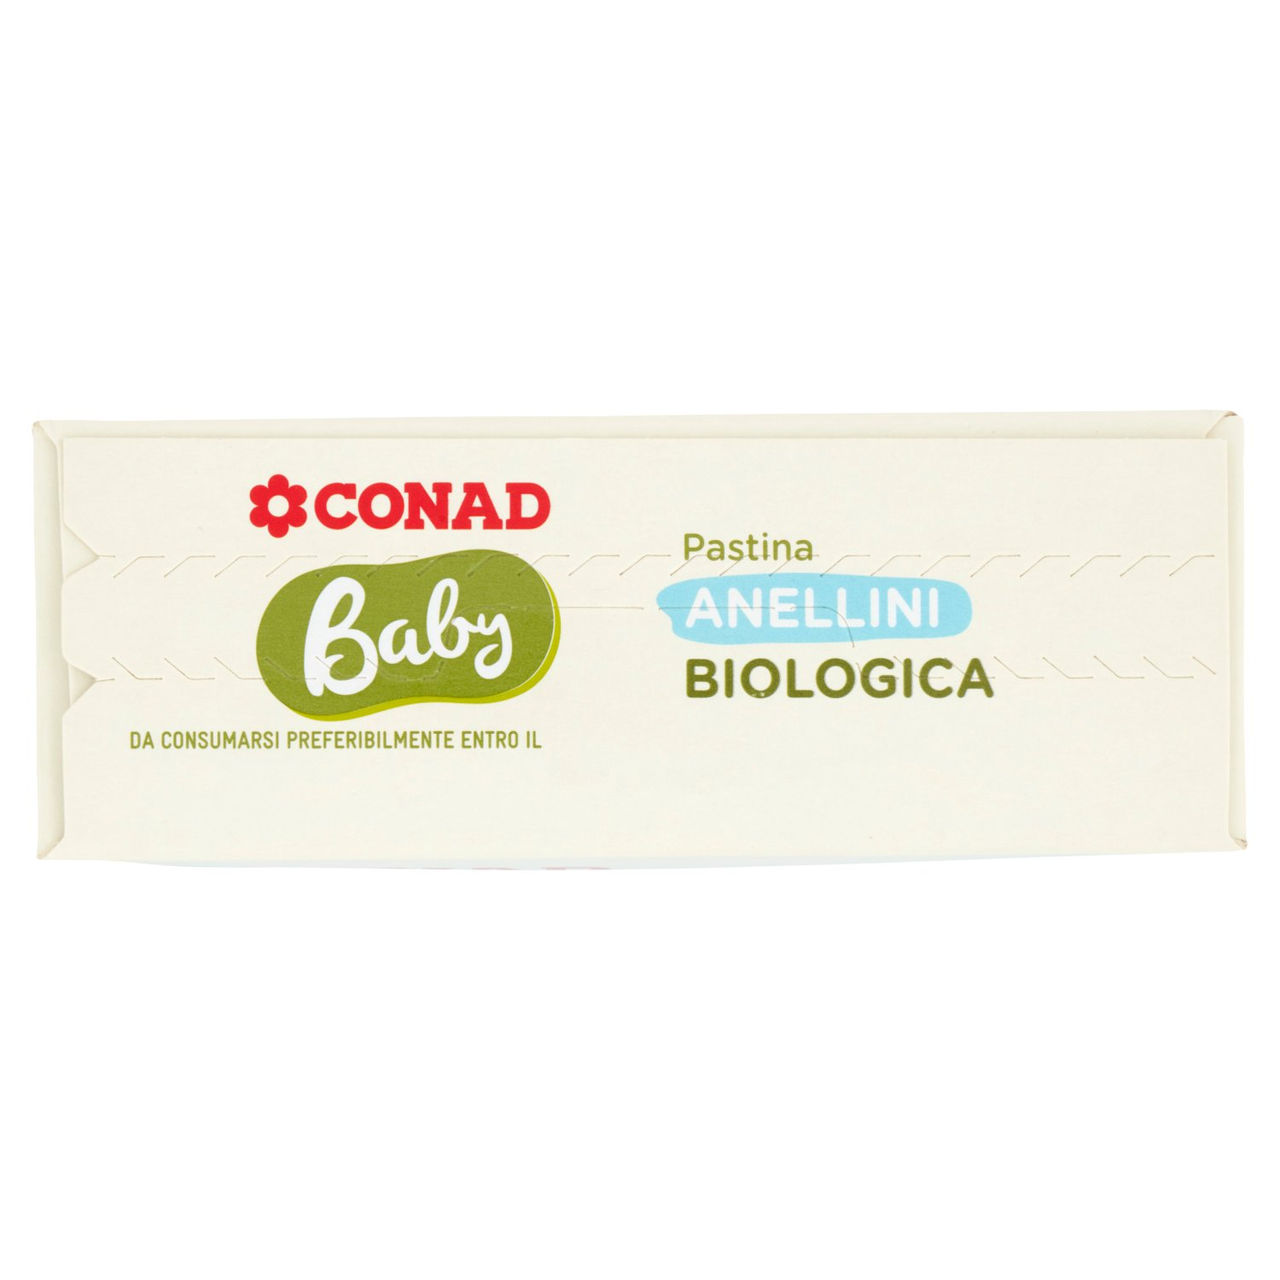 Baby Anellini Pastina Biologica 340 g Conad